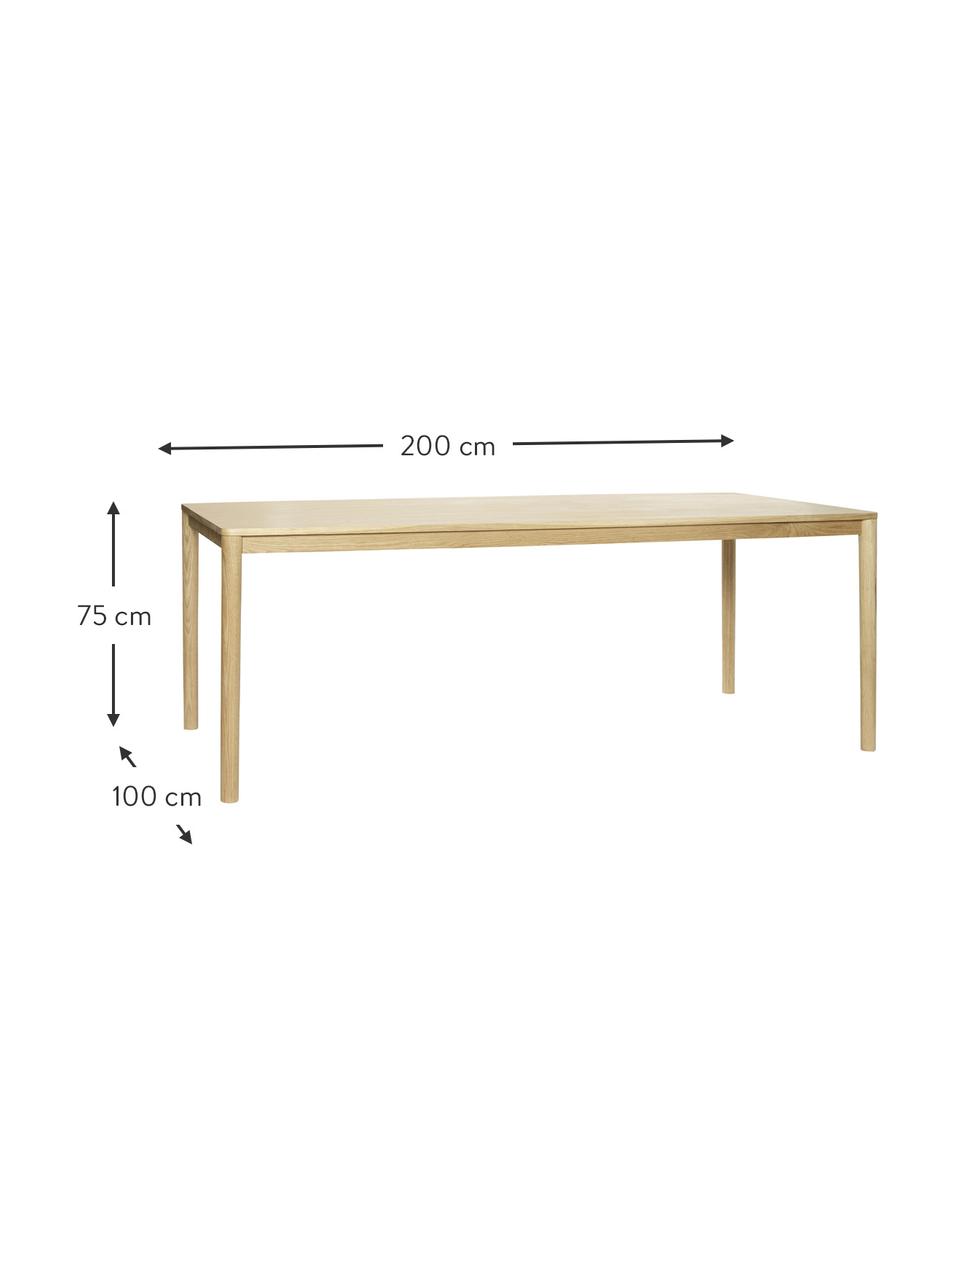 Jídelní stůl z dubového dřeva Ground, 200 x 100 cm, Dubové dřevo, certifikace FSC, Dubové dřevo, Š 200 cm, H 100 cm